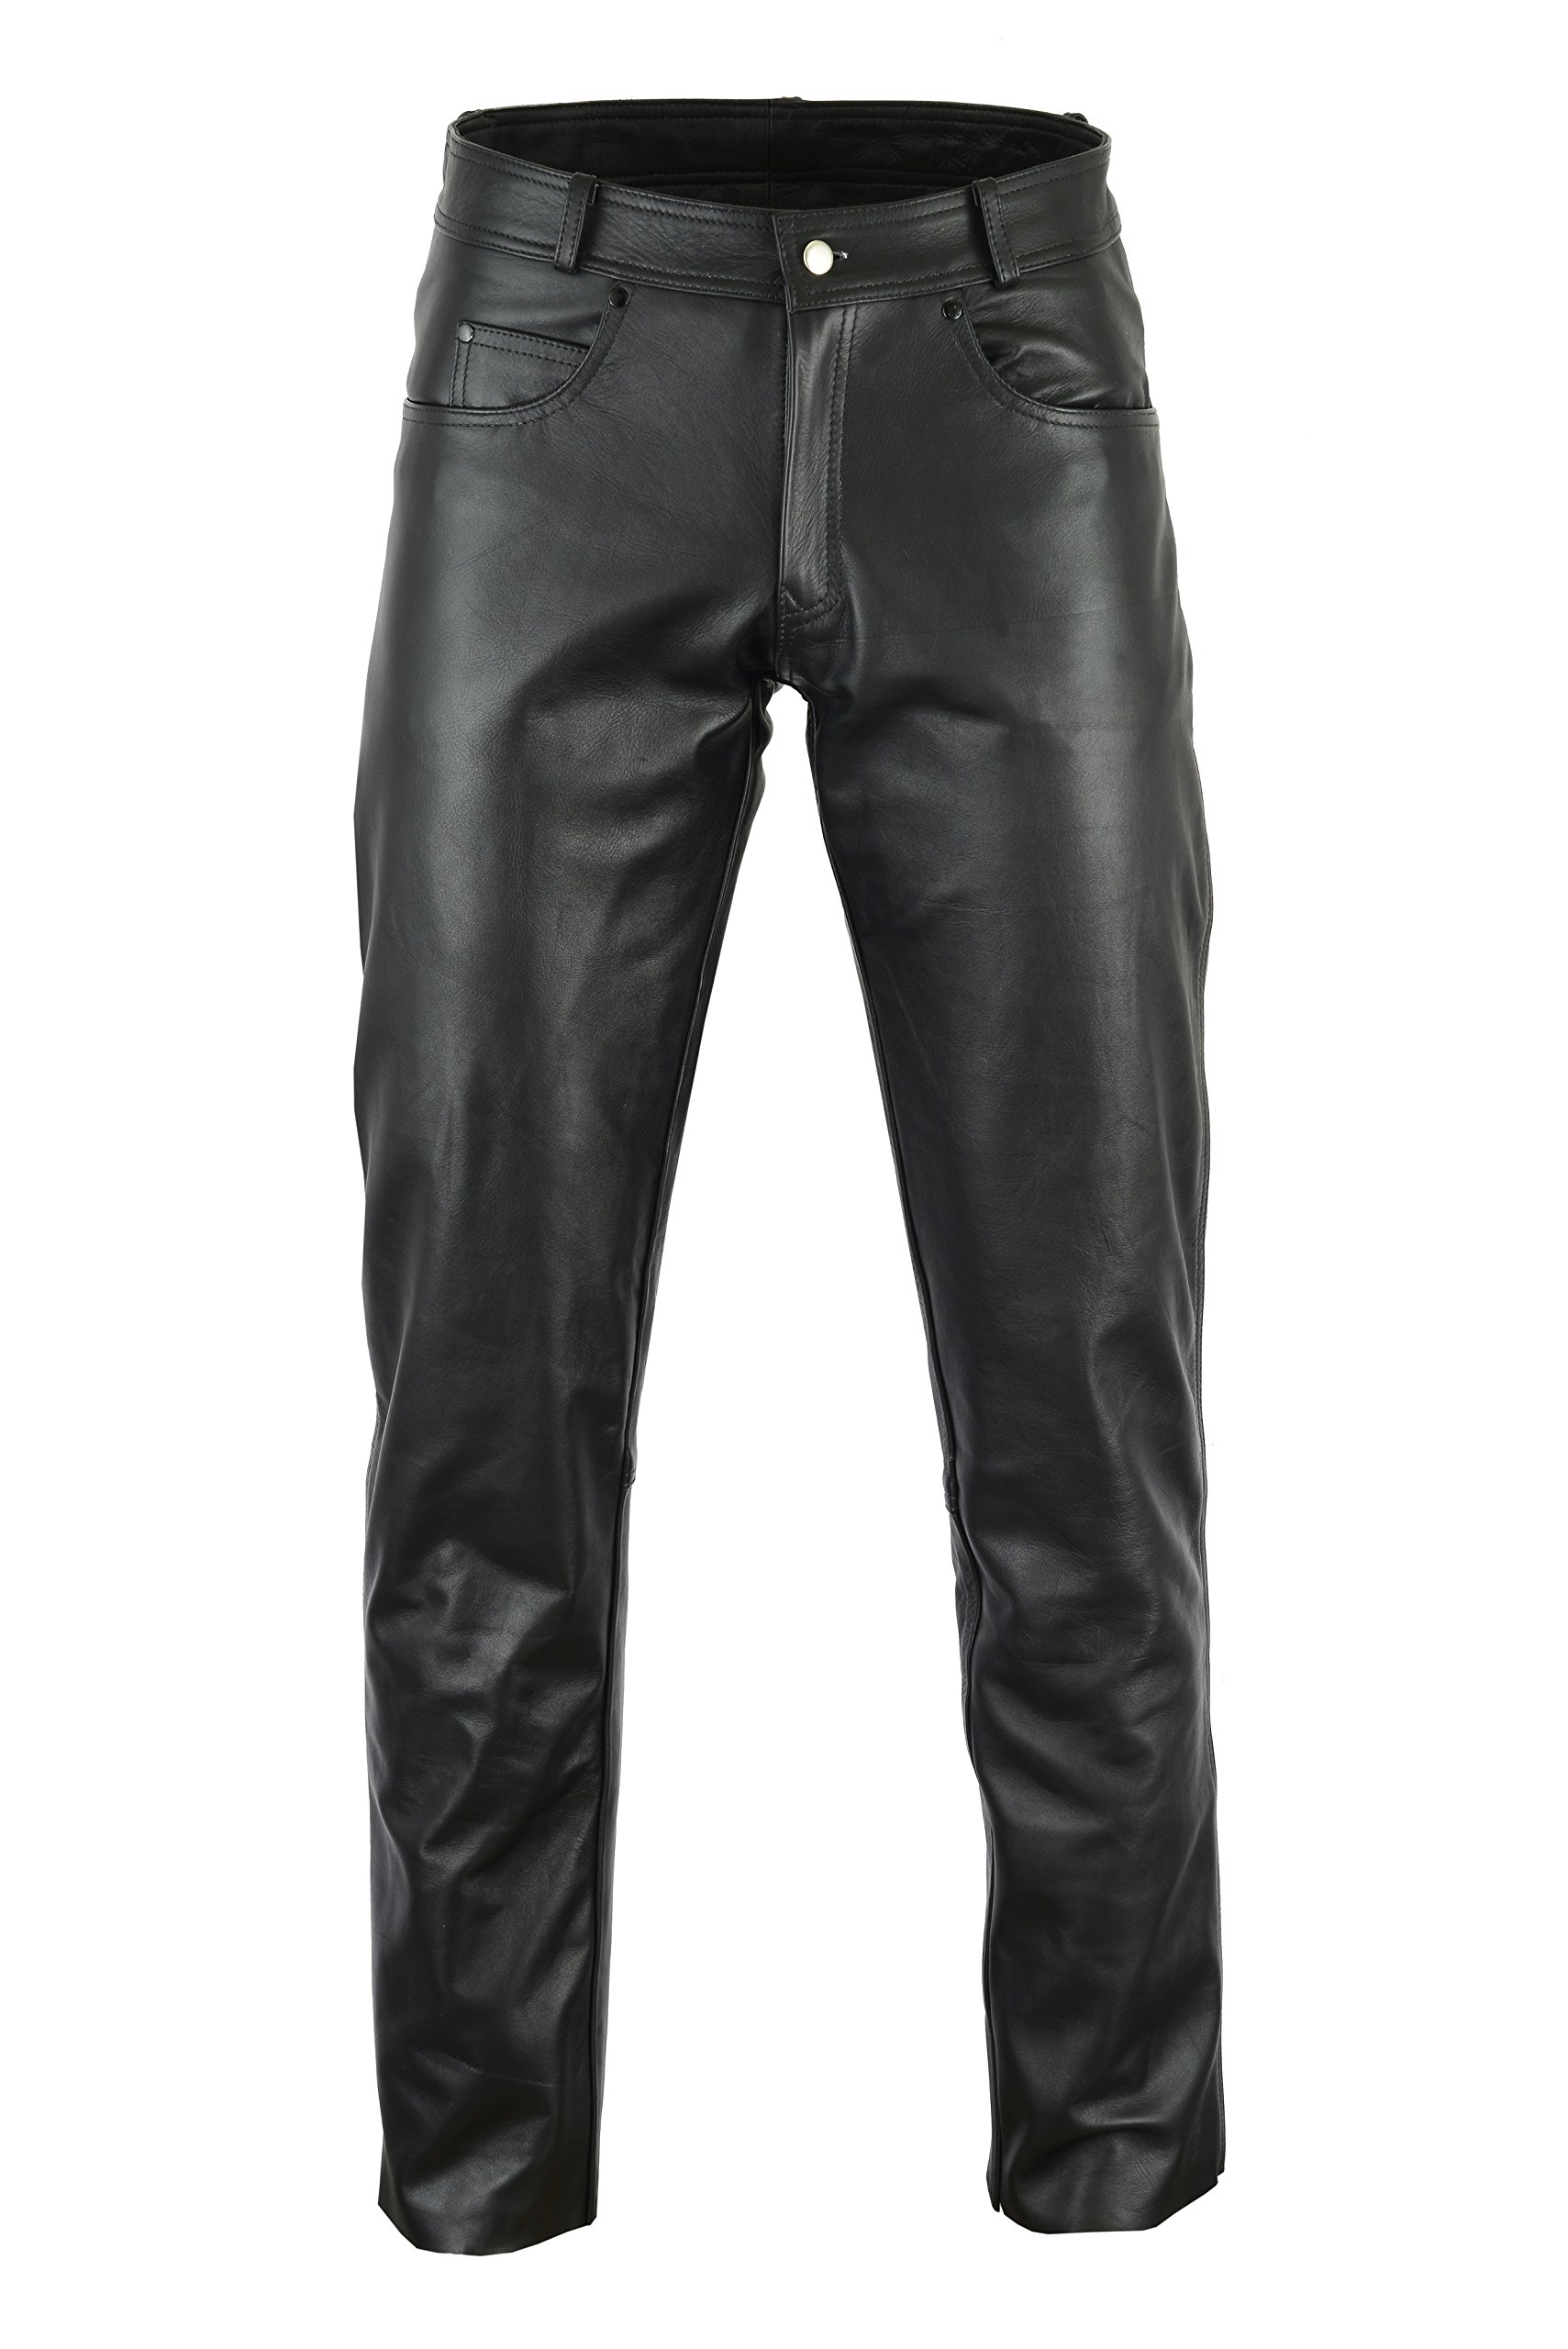 Bikers Gear Australia Herren-Jeans aus weichem Leder für Bequeme Passform, schwarz, Größe M von Bikers Gear